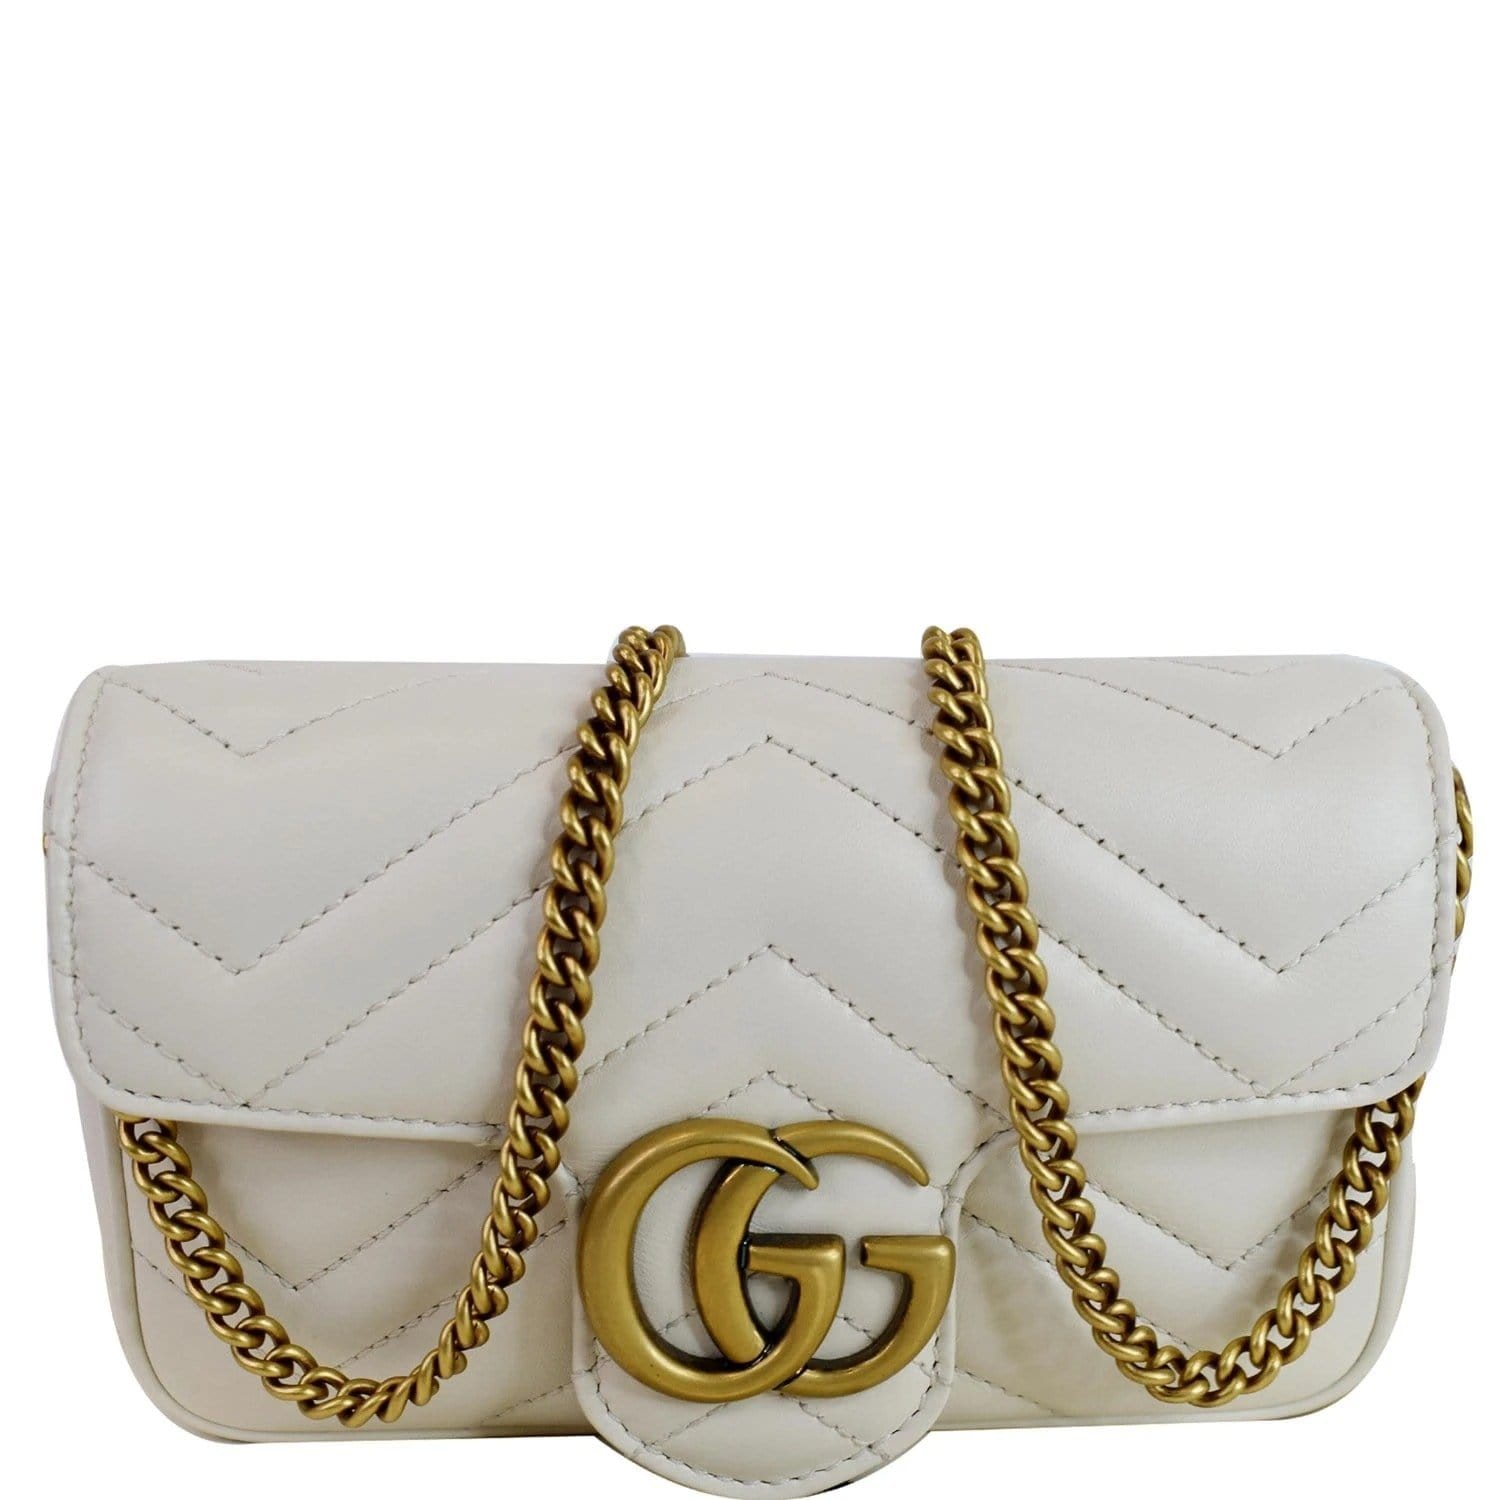 GG Marmont matelassé leather super mini bag in white chevron leather